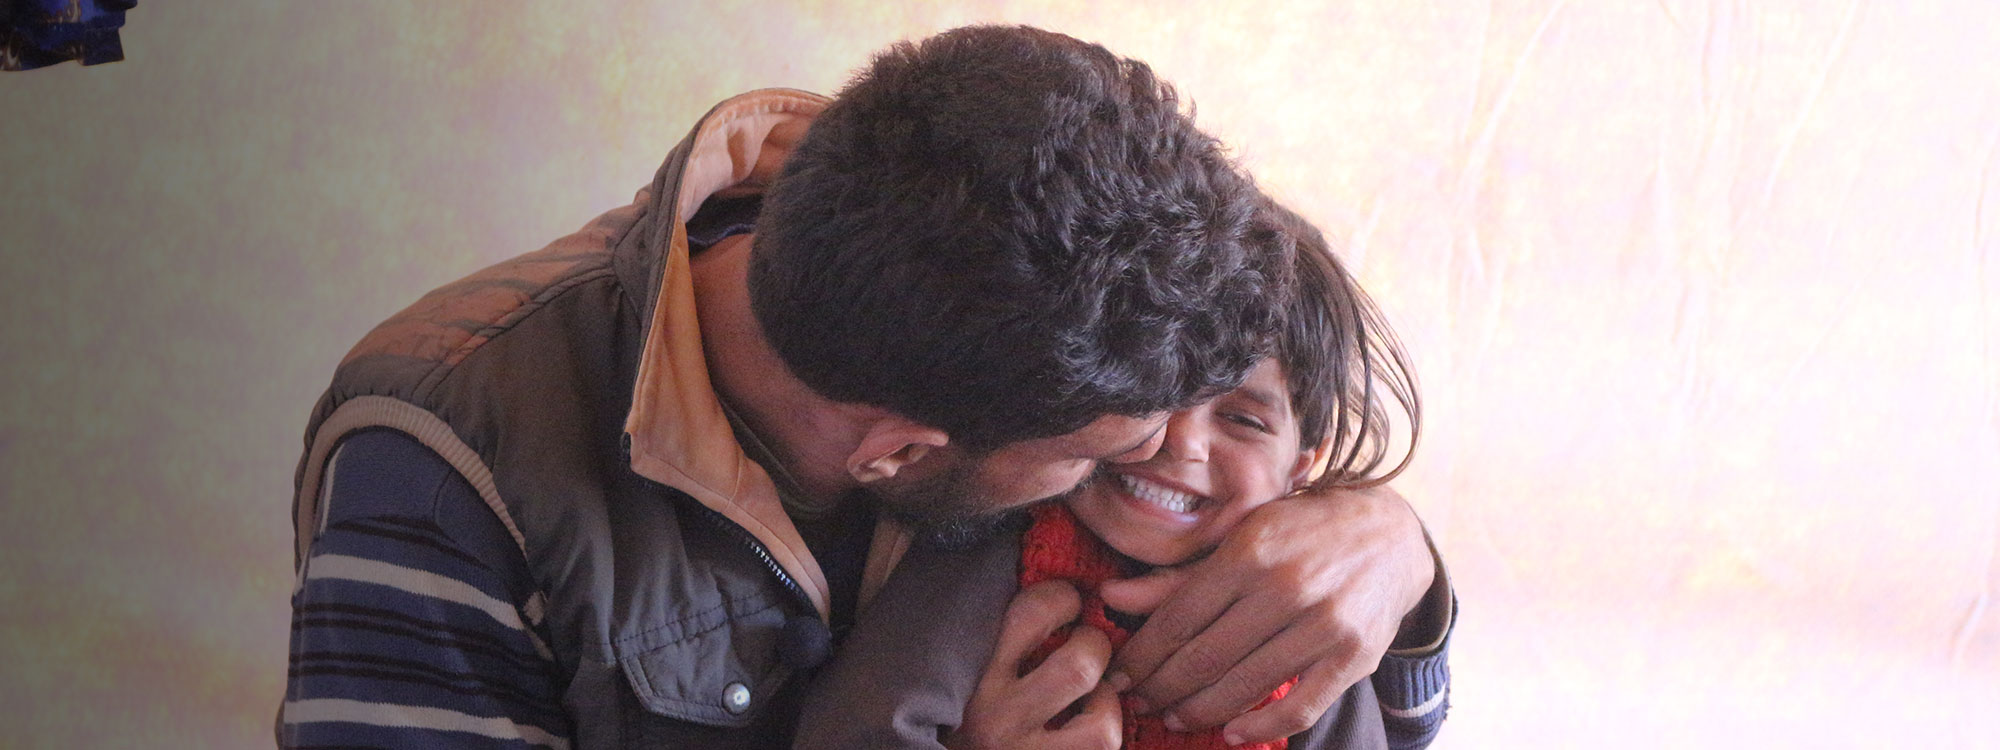 man laughing hugging daughter in Syria